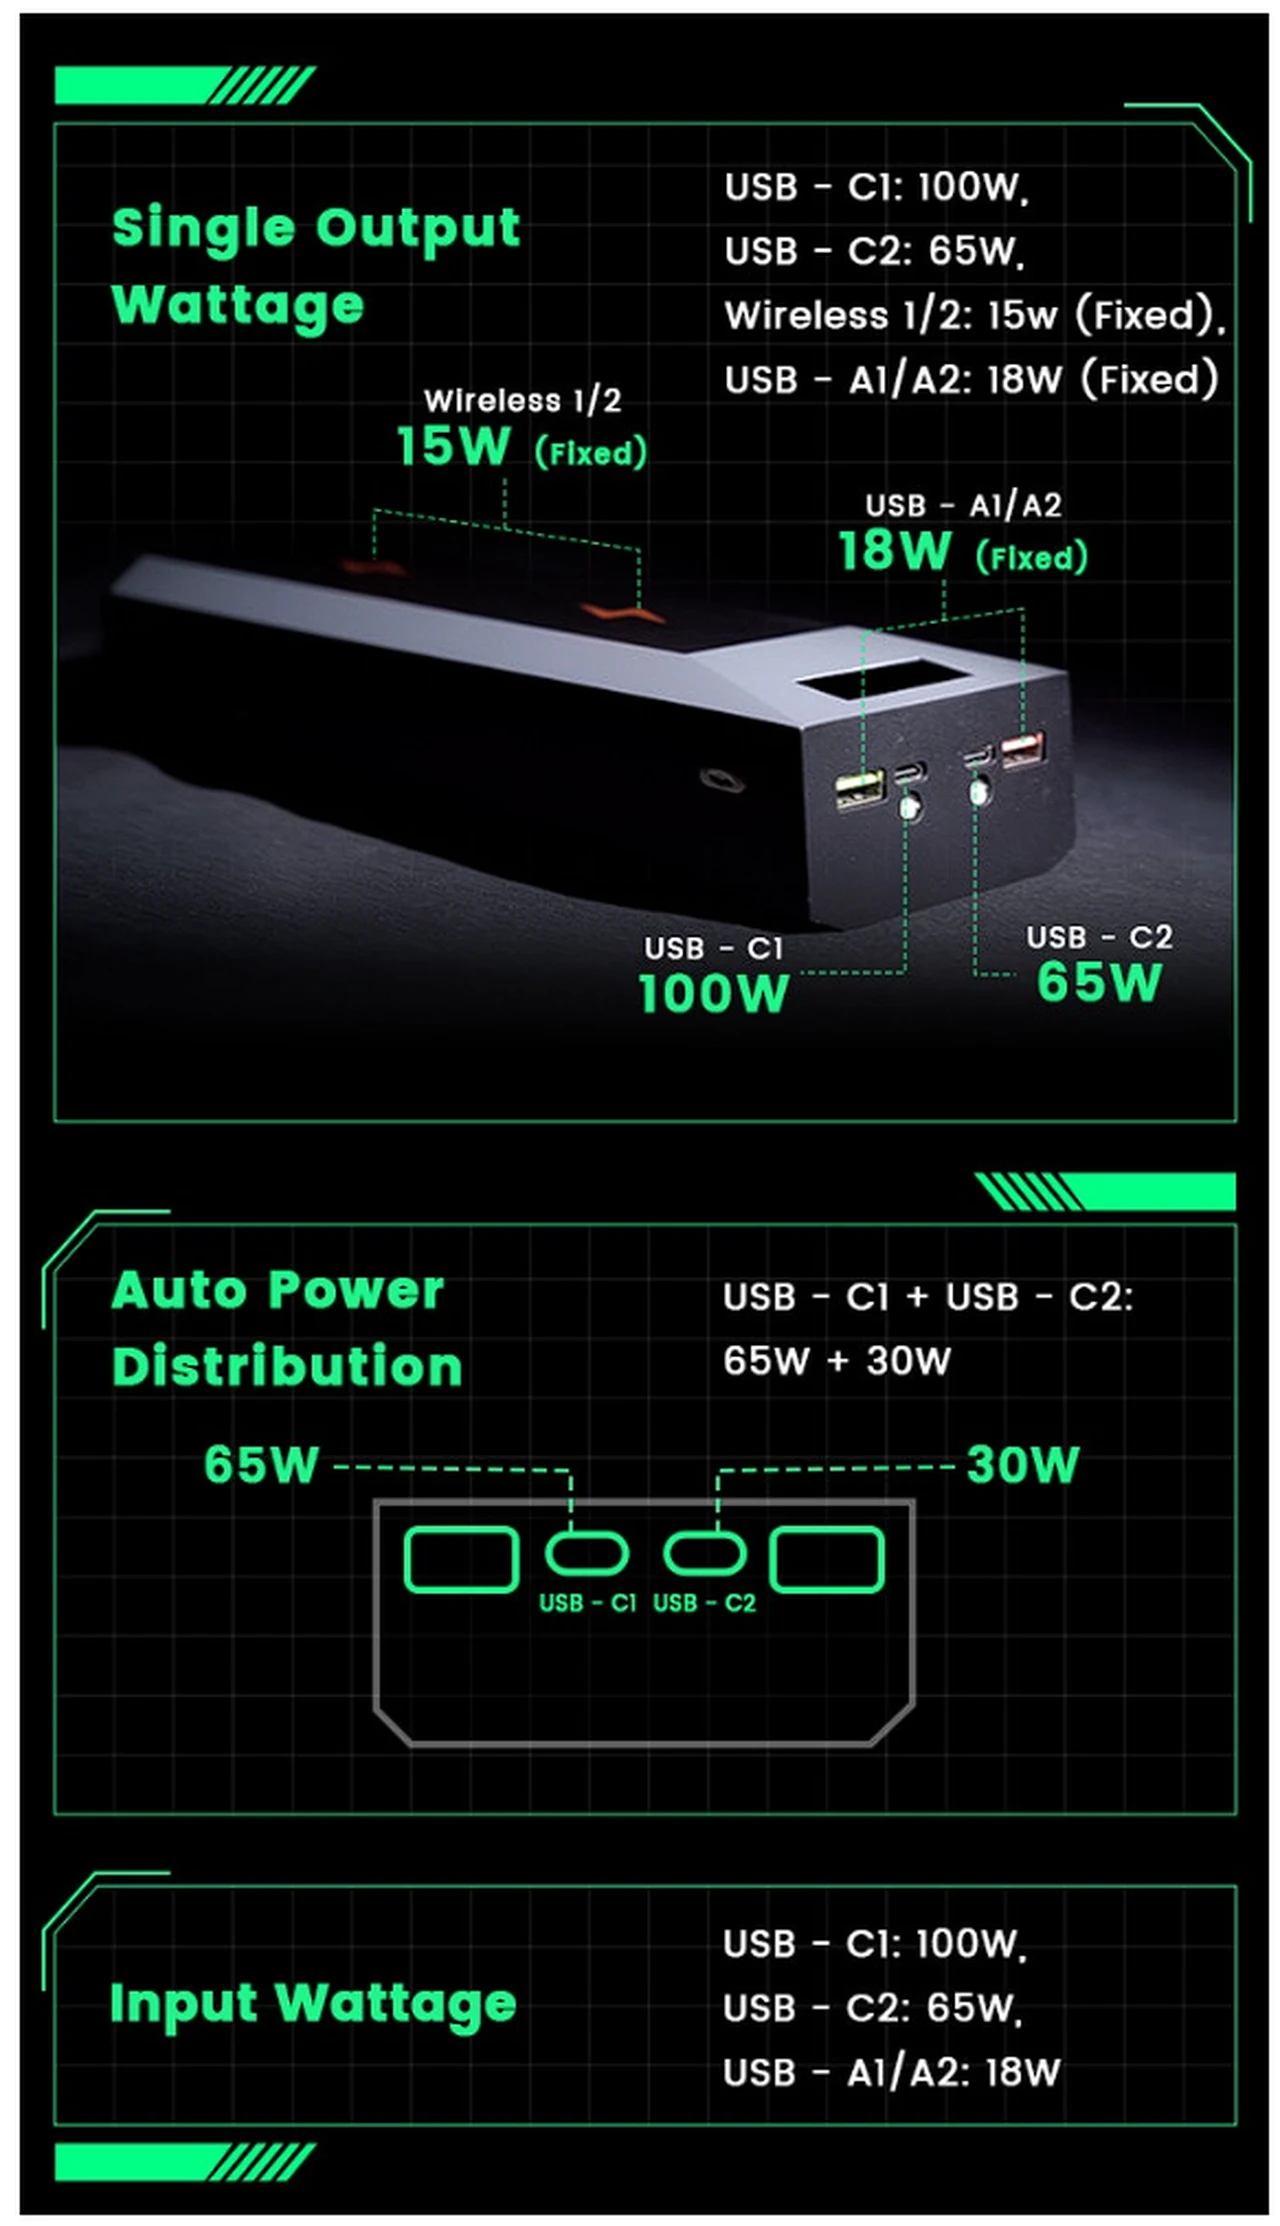 WonderWatt power bank features